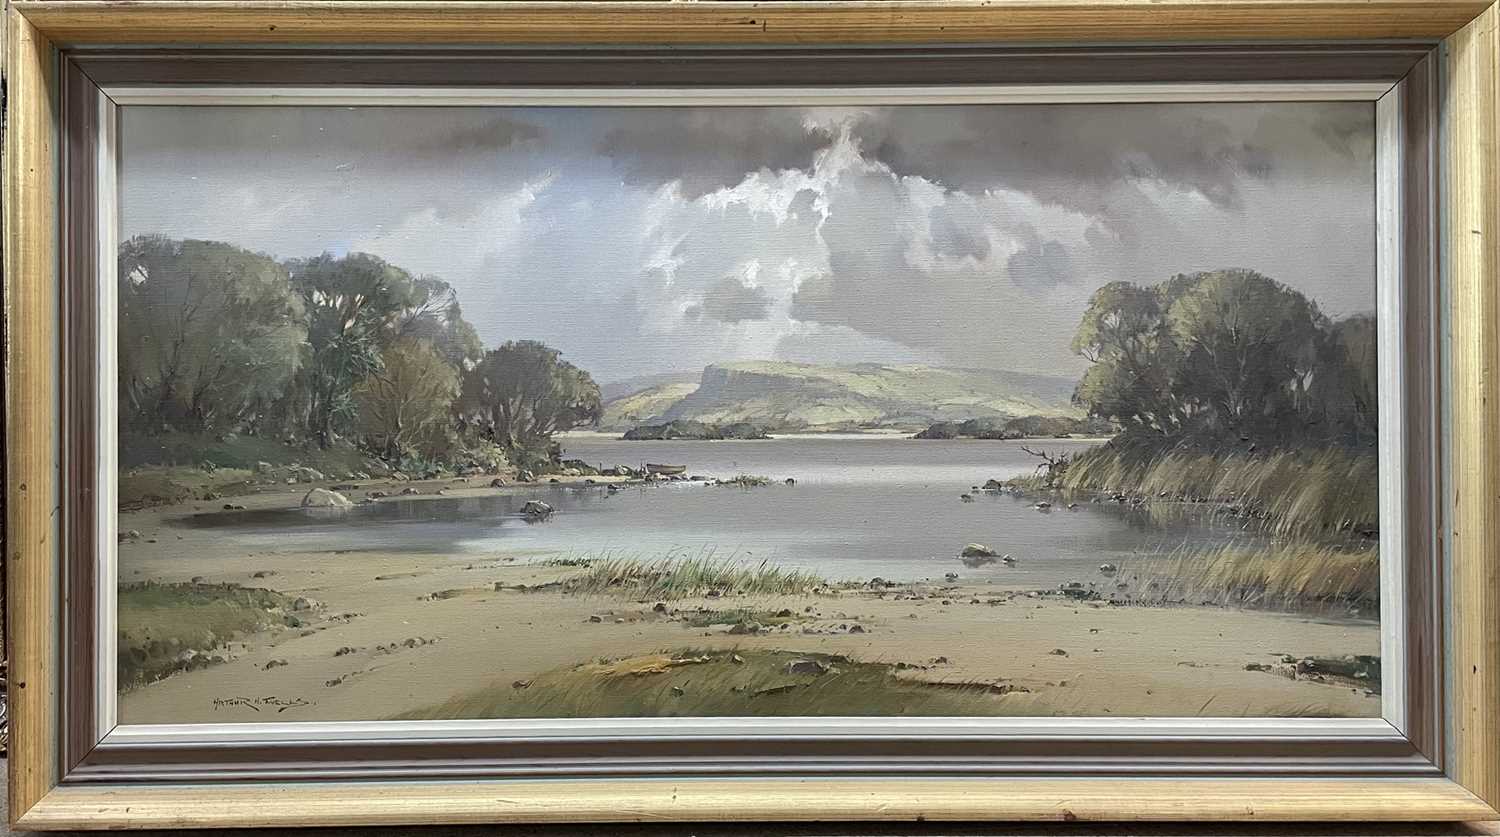 Arthur Wells, 20th century, oil on canvas - Irish Loch, signed framed